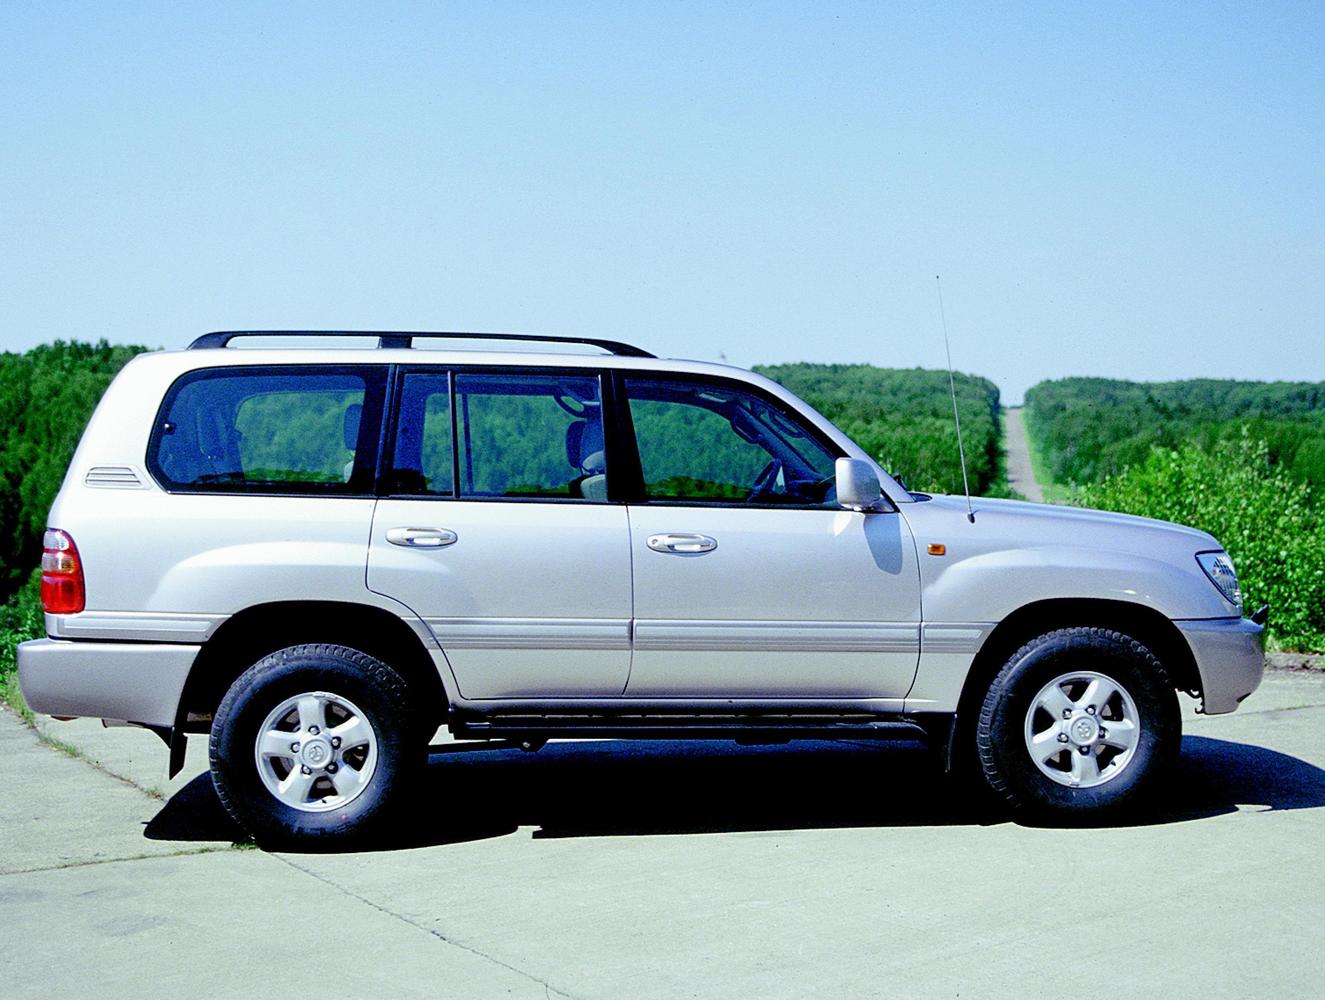 внедорожник Toyota Land Cruiser 1997 - 2002г выпуска модификация 4.2 AT (131 л.с.) 4×4